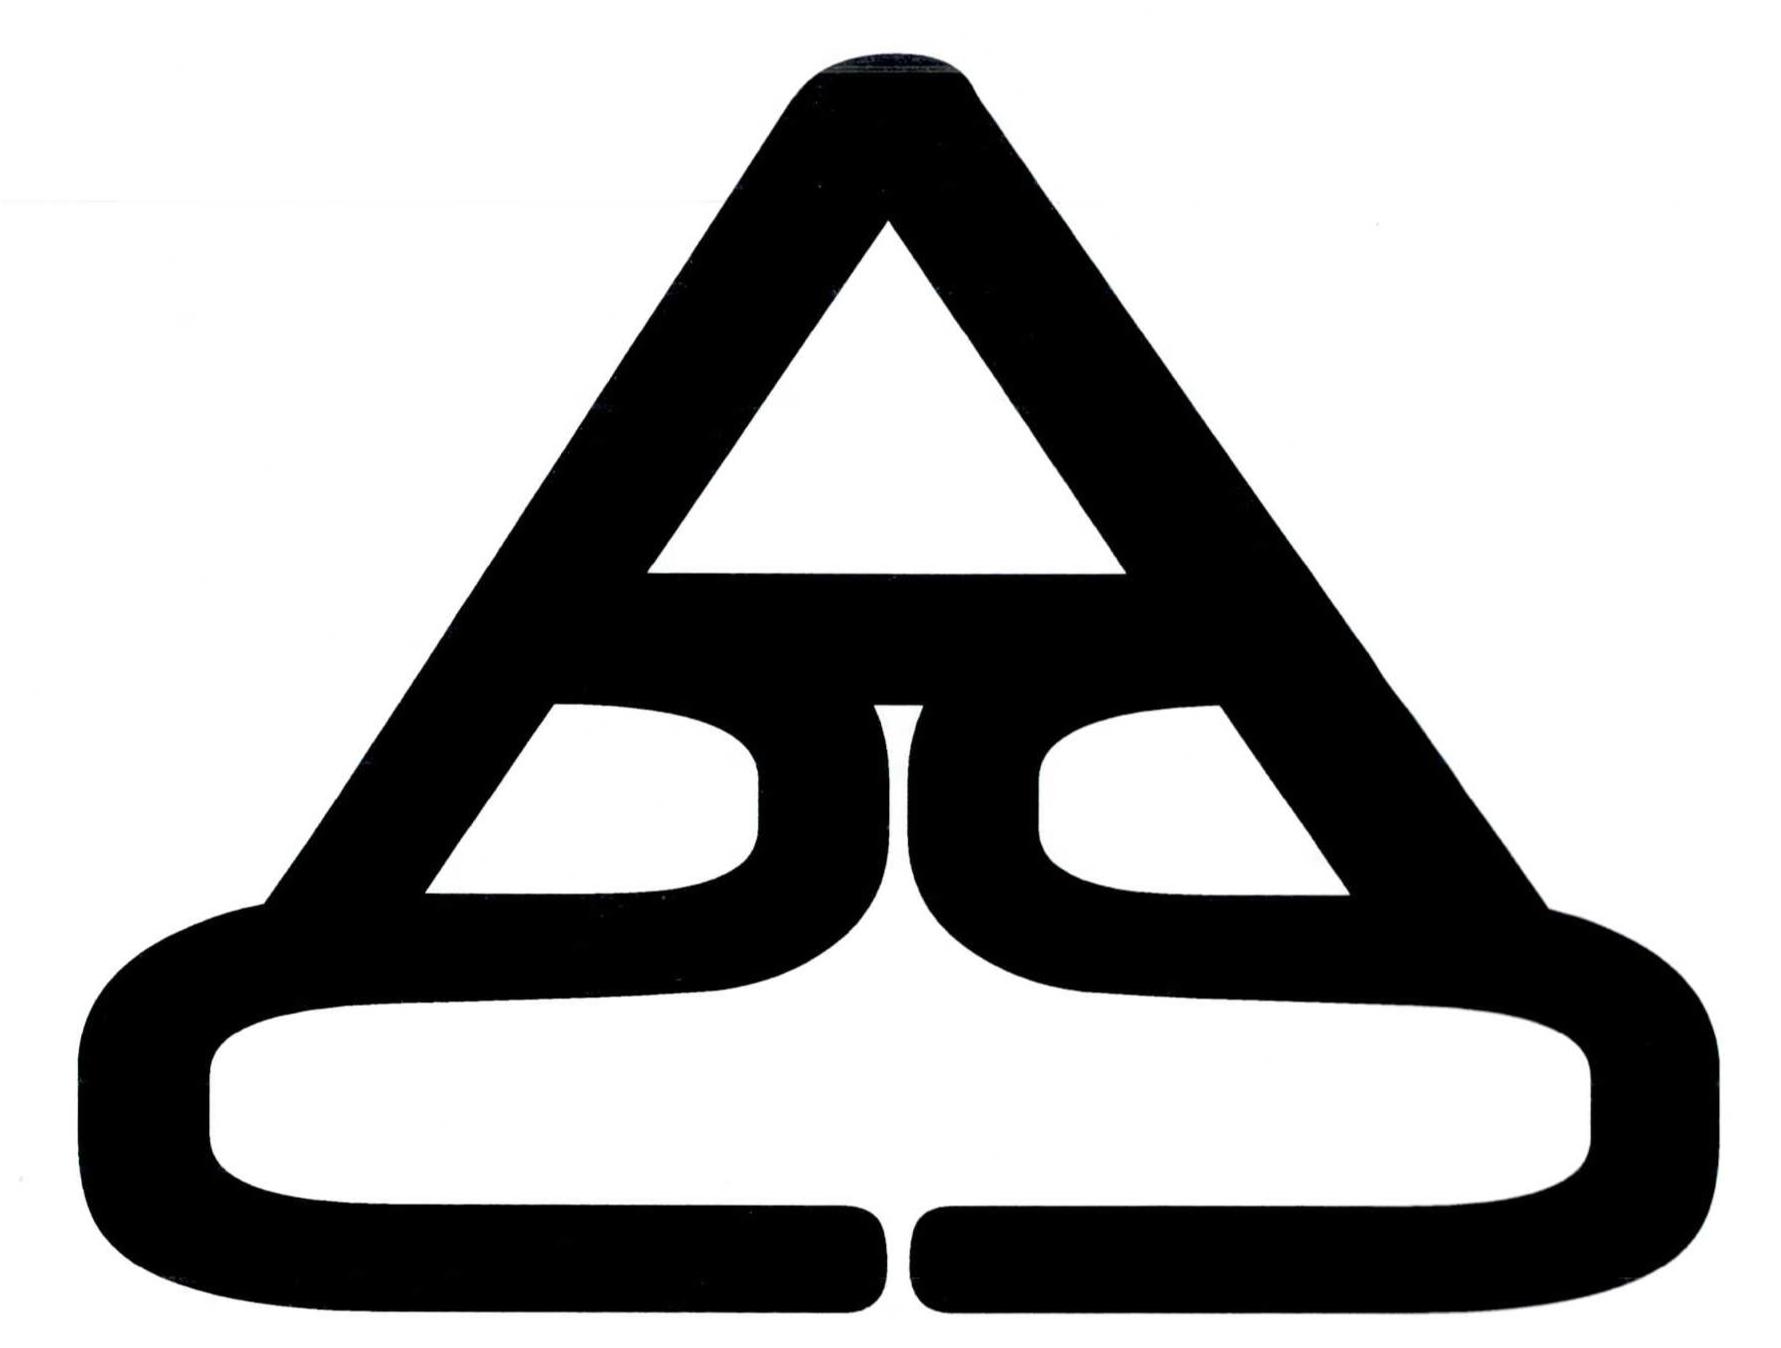 Trademark Logo A2S